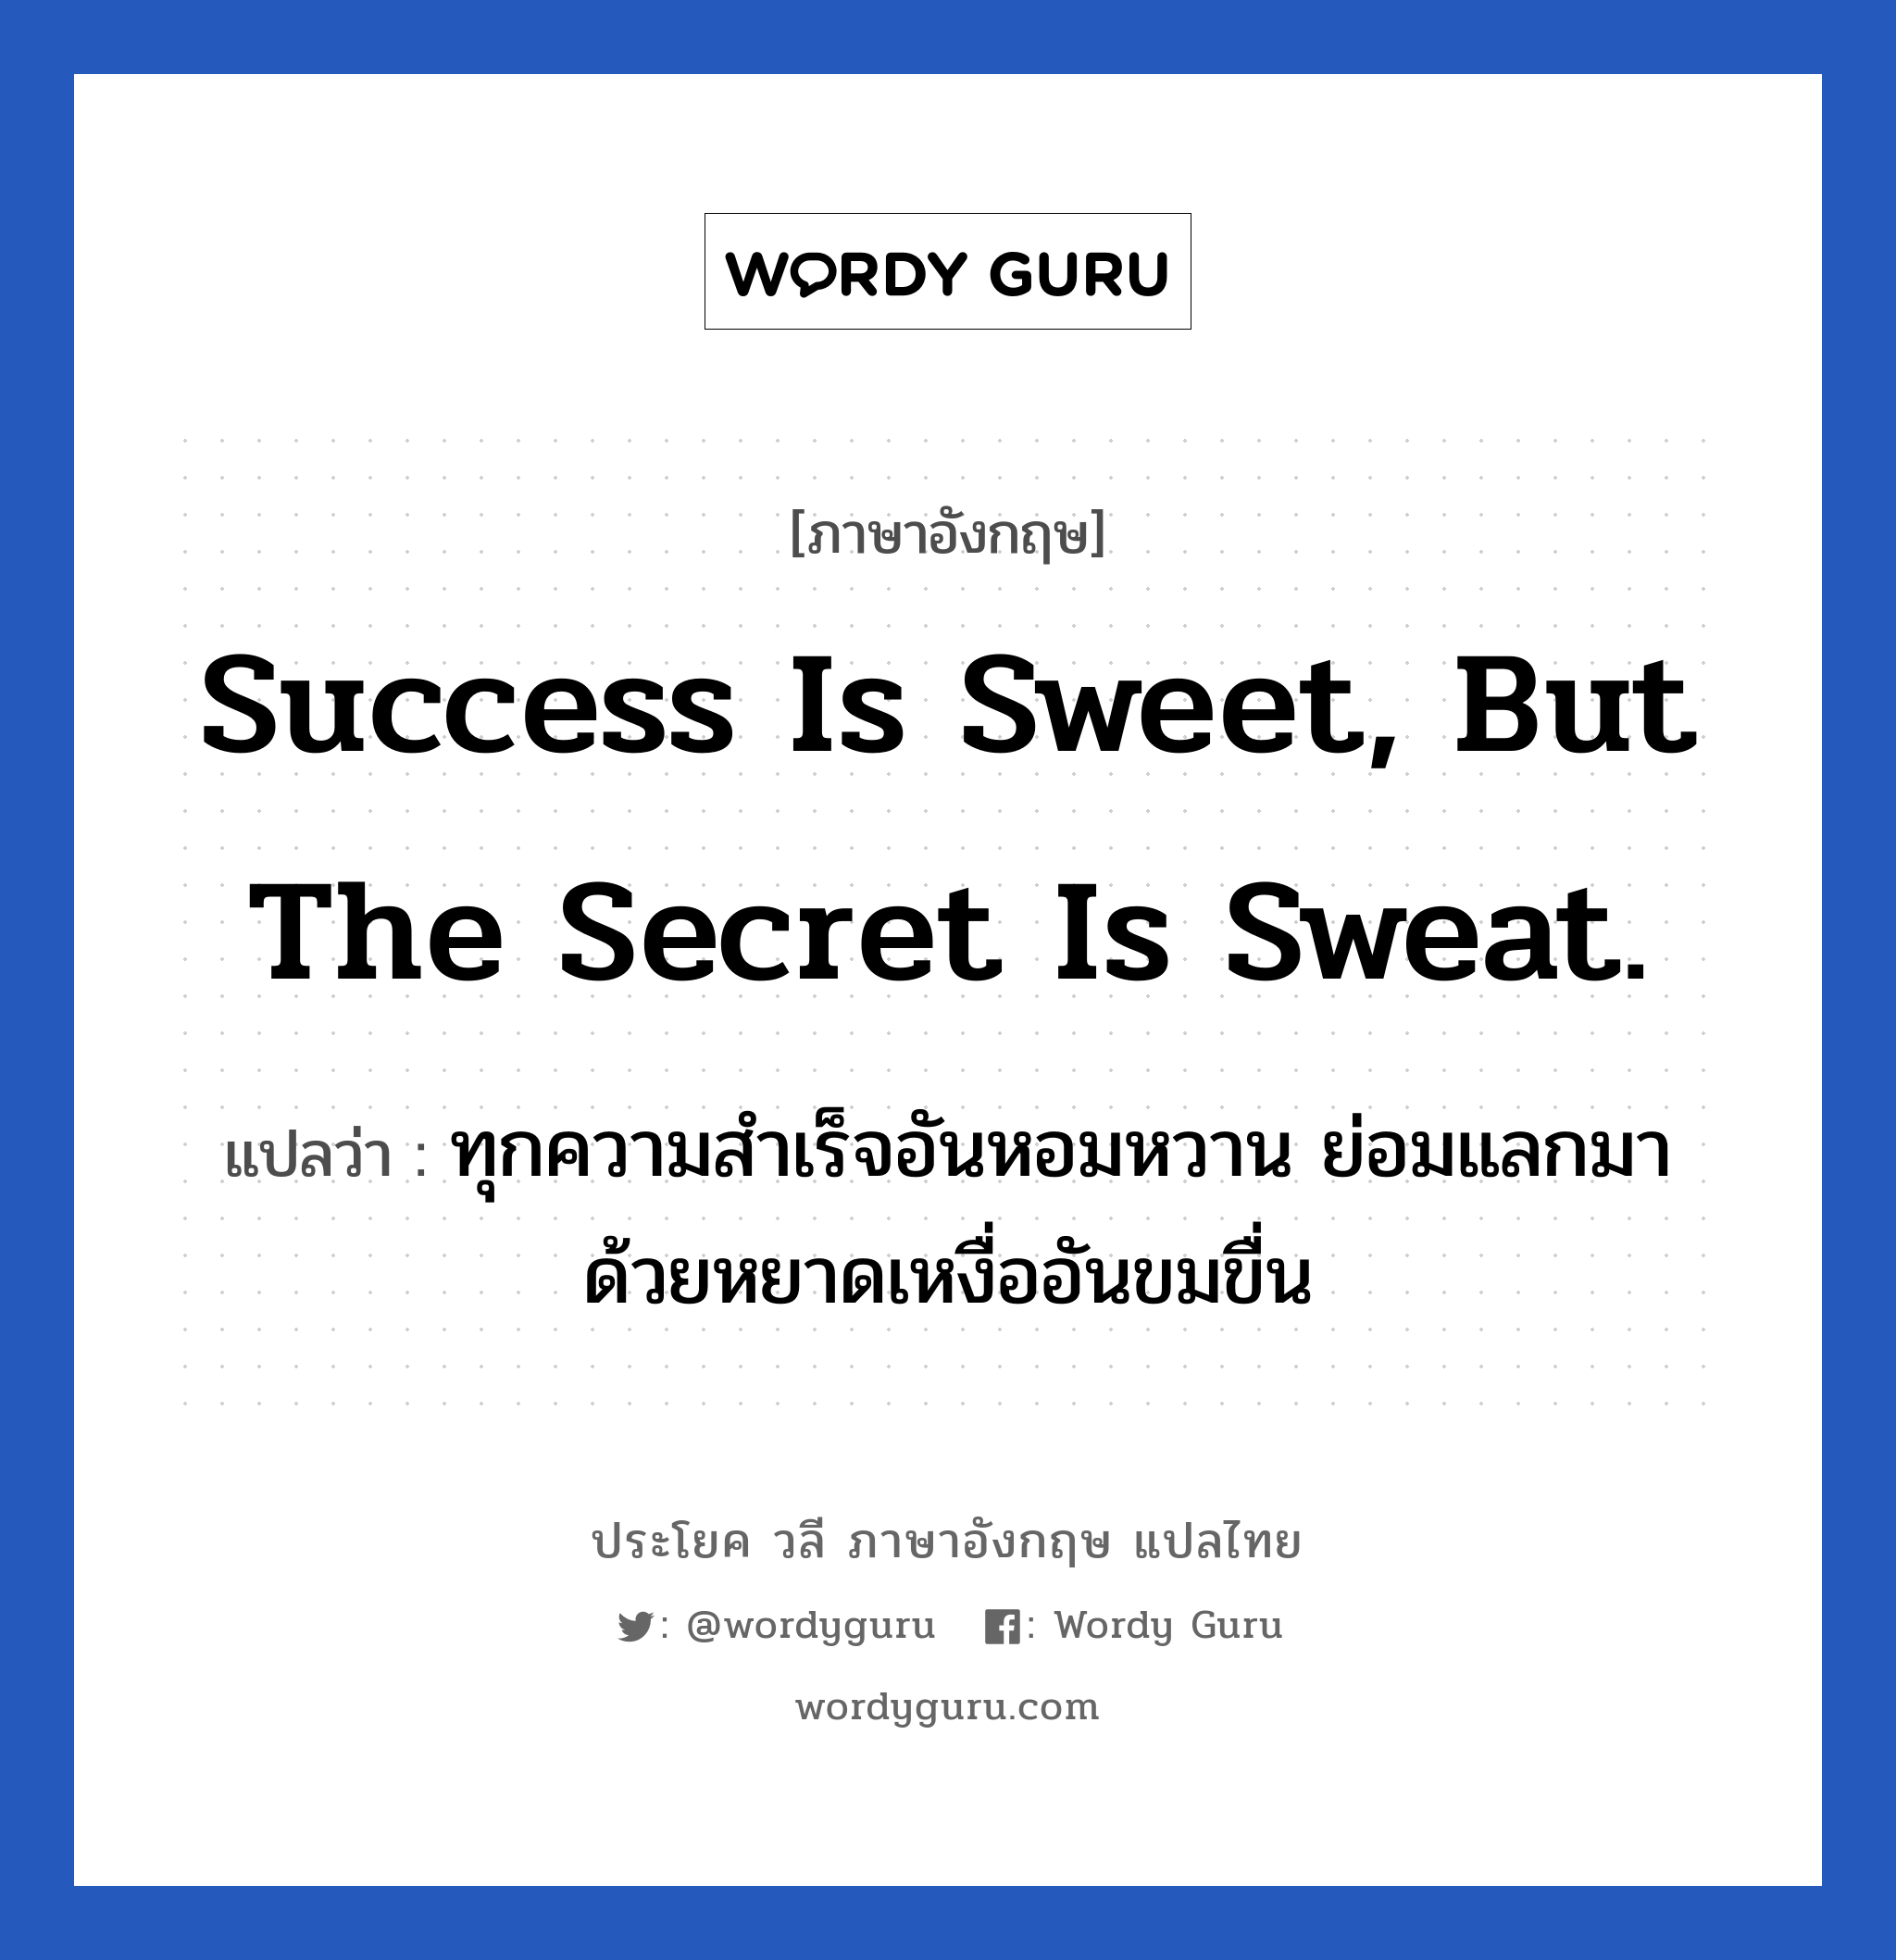 Success is sweet, but the secret is sweat. แปลว่า?, วลีภาษาอังกฤษ Success is sweet, but the secret is sweat. แปลว่า ทุกความสำเร็จอันหอมหวาน ย่อมแลกมาด้วยหยาดเหงื่ออันขมขื่น หมวด ในที่ทำงาน